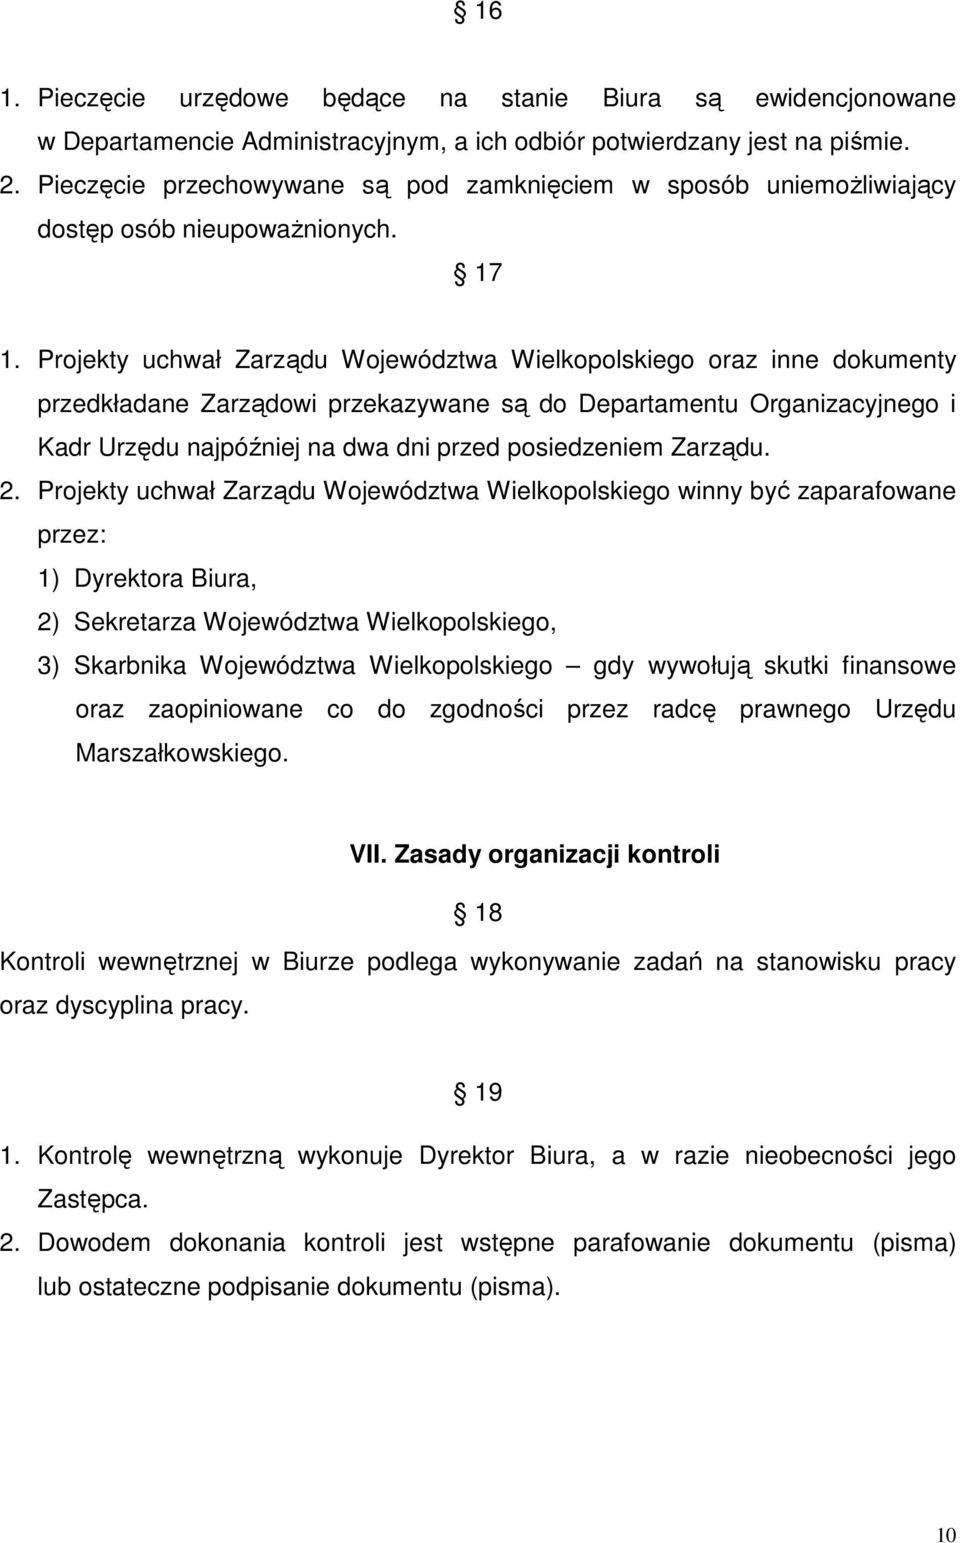 Projekty uchwał Zarządu Województwa Wielkopolskiego oraz inne dokumenty przedkładane Zarządowi przekazywane są do Departamentu Organizacyjnego i Kadr Urzędu najpóźniej na dwa dni przed posiedzeniem